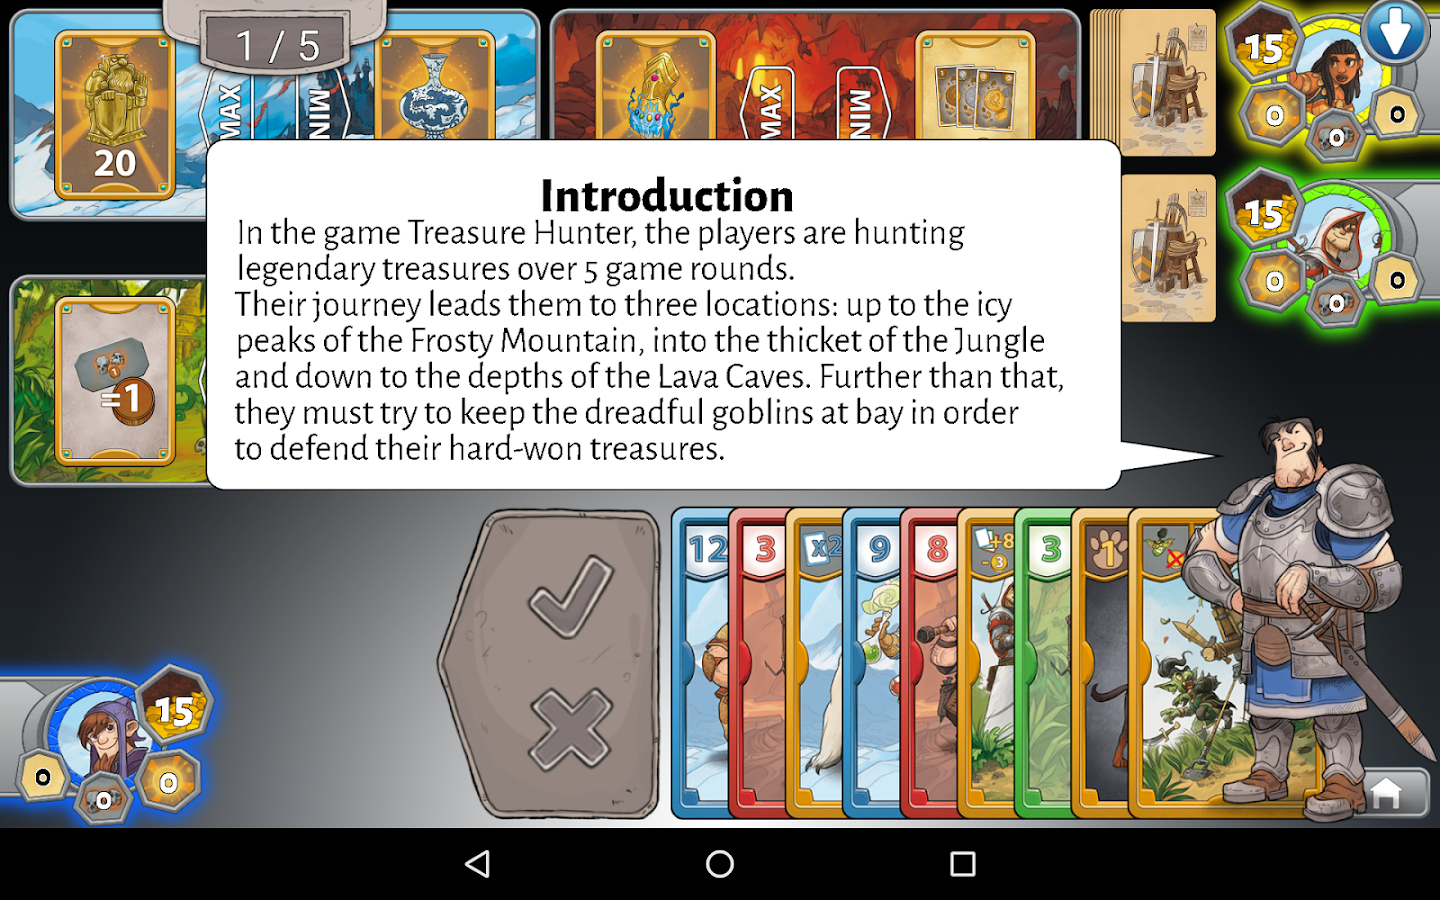    TreasureHunter by R.Garfield- screenshot  